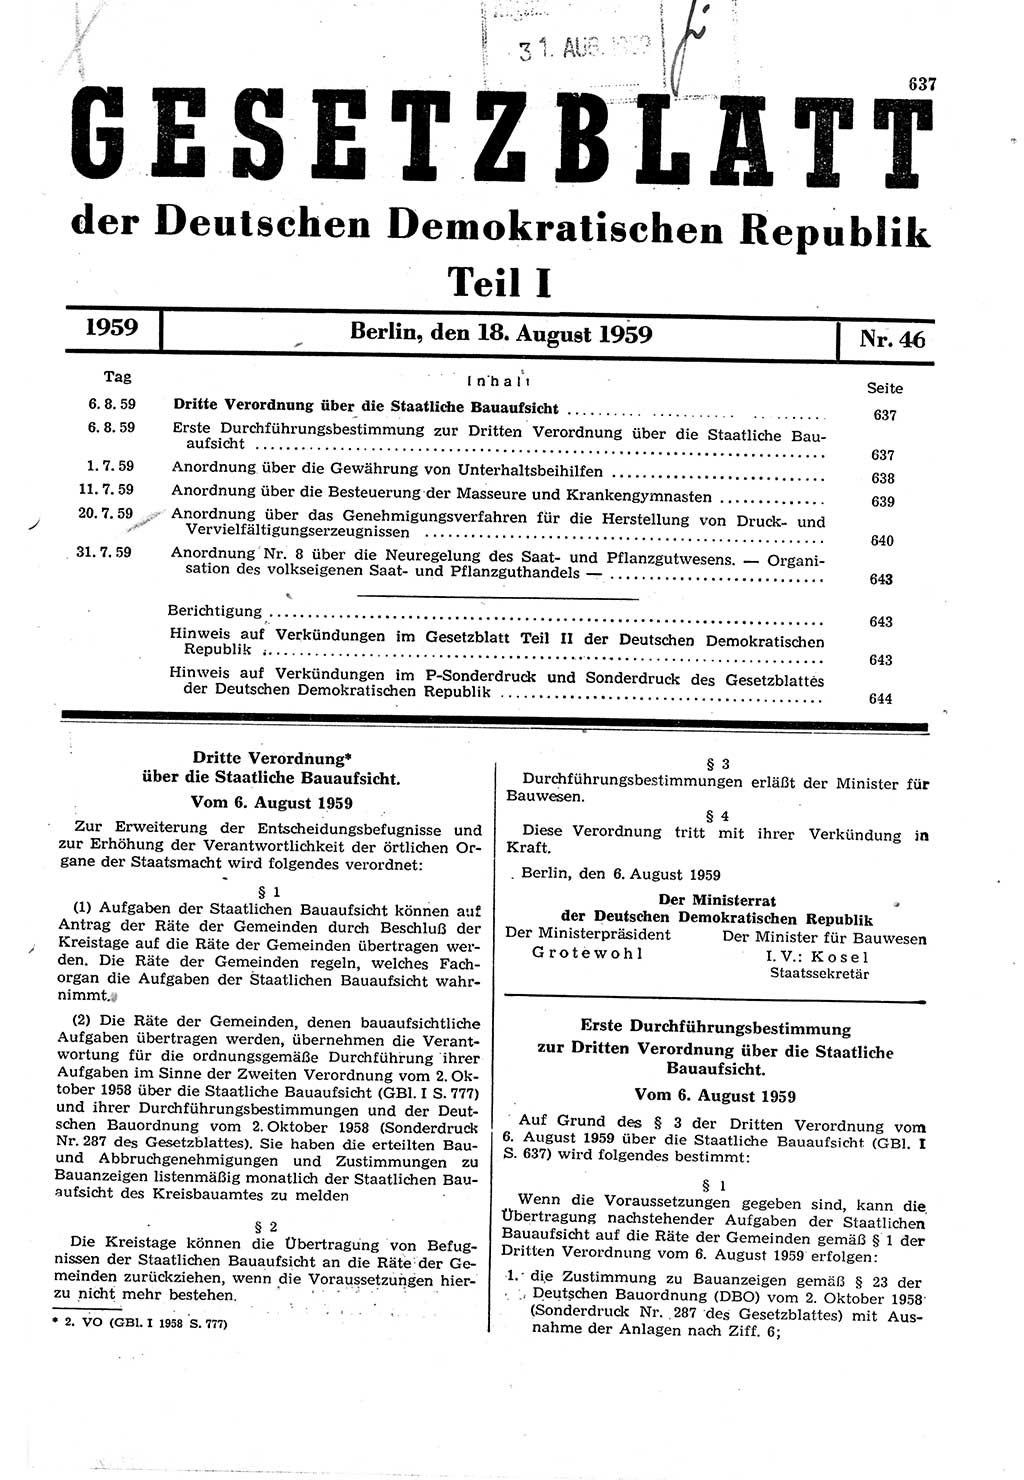 Gesetzblatt (GBl.) der Deutschen Demokratischen Republik (DDR) Teil Ⅰ 1959, Seite 637 (GBl. DDR Ⅰ 1959, S. 637)